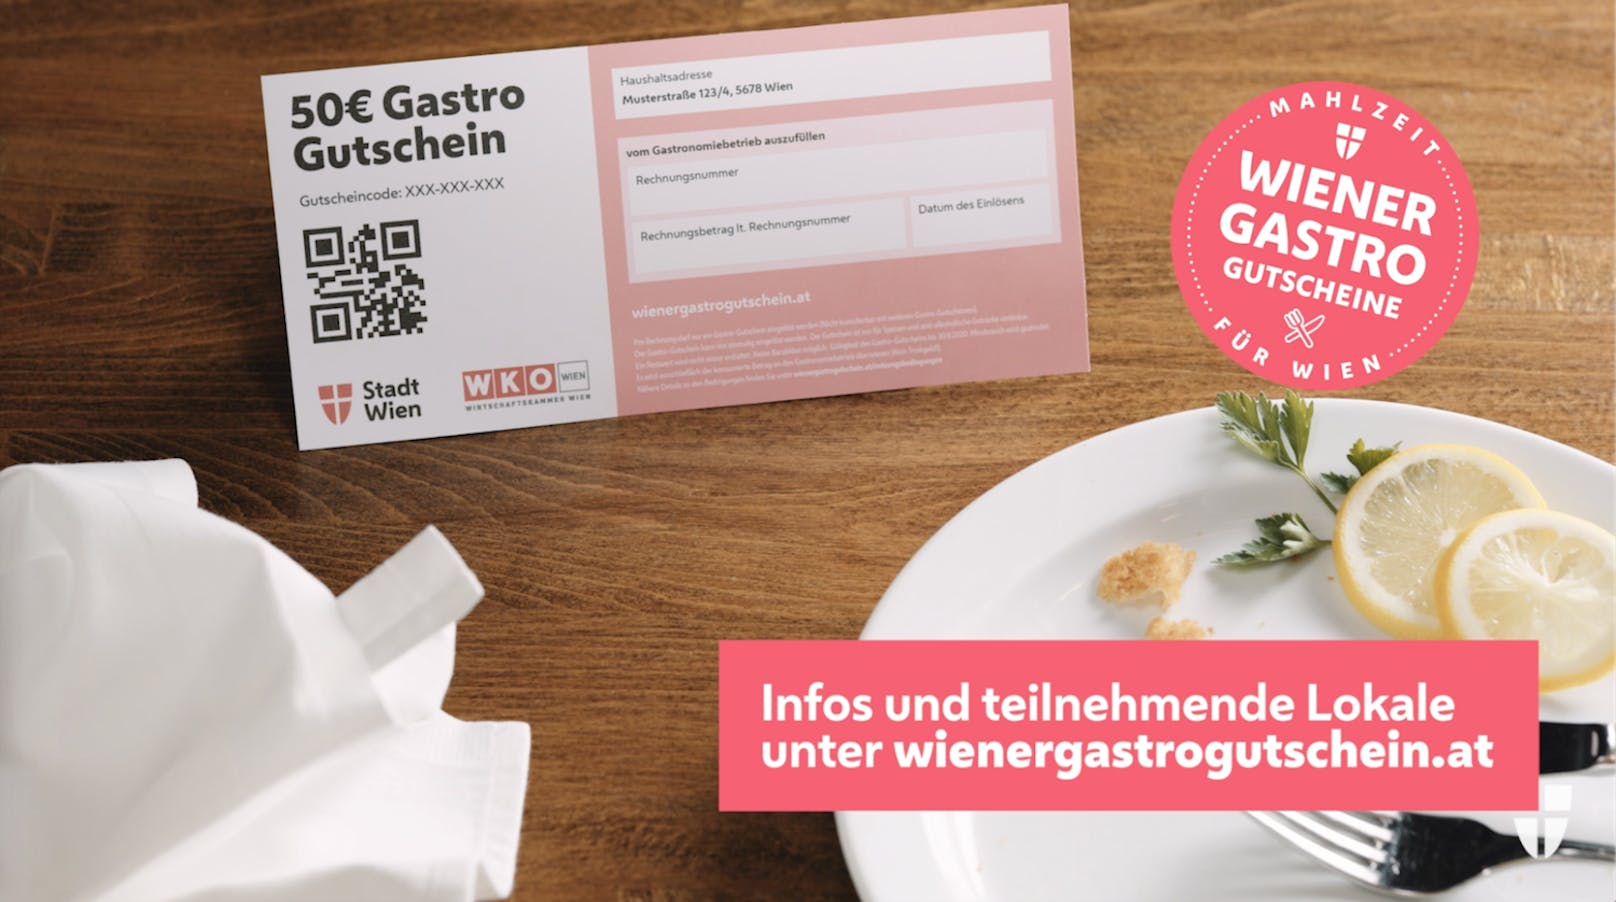 Das Video will auf humorvolle Art und Weise für den Gastro-Gutschein werben. Dieser wurde in den vergangenen Tagen an 950.000 Wiener Haushalte versandt und soll den Wienern Danke für den Zusammenhalt während der Coronakrise sagen und gleichzeitig die Wirte unterstützen.